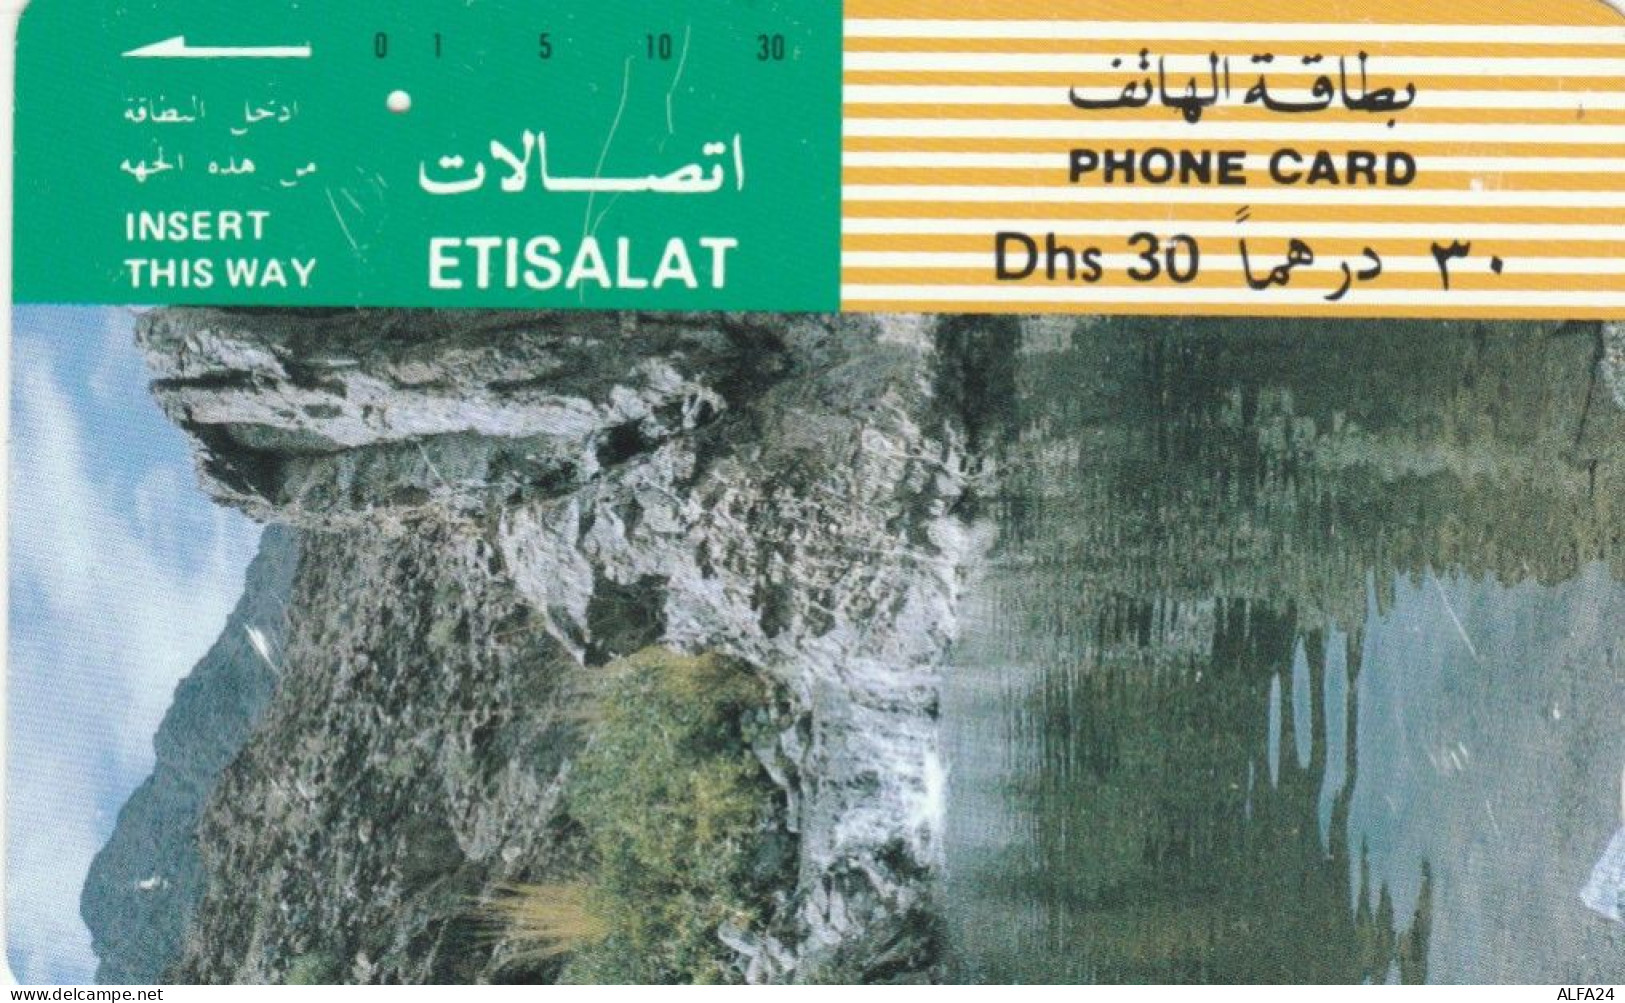 PHONE CARD EMIRATI ARABI (E74.29.8 - Ver. Arab. Emirate